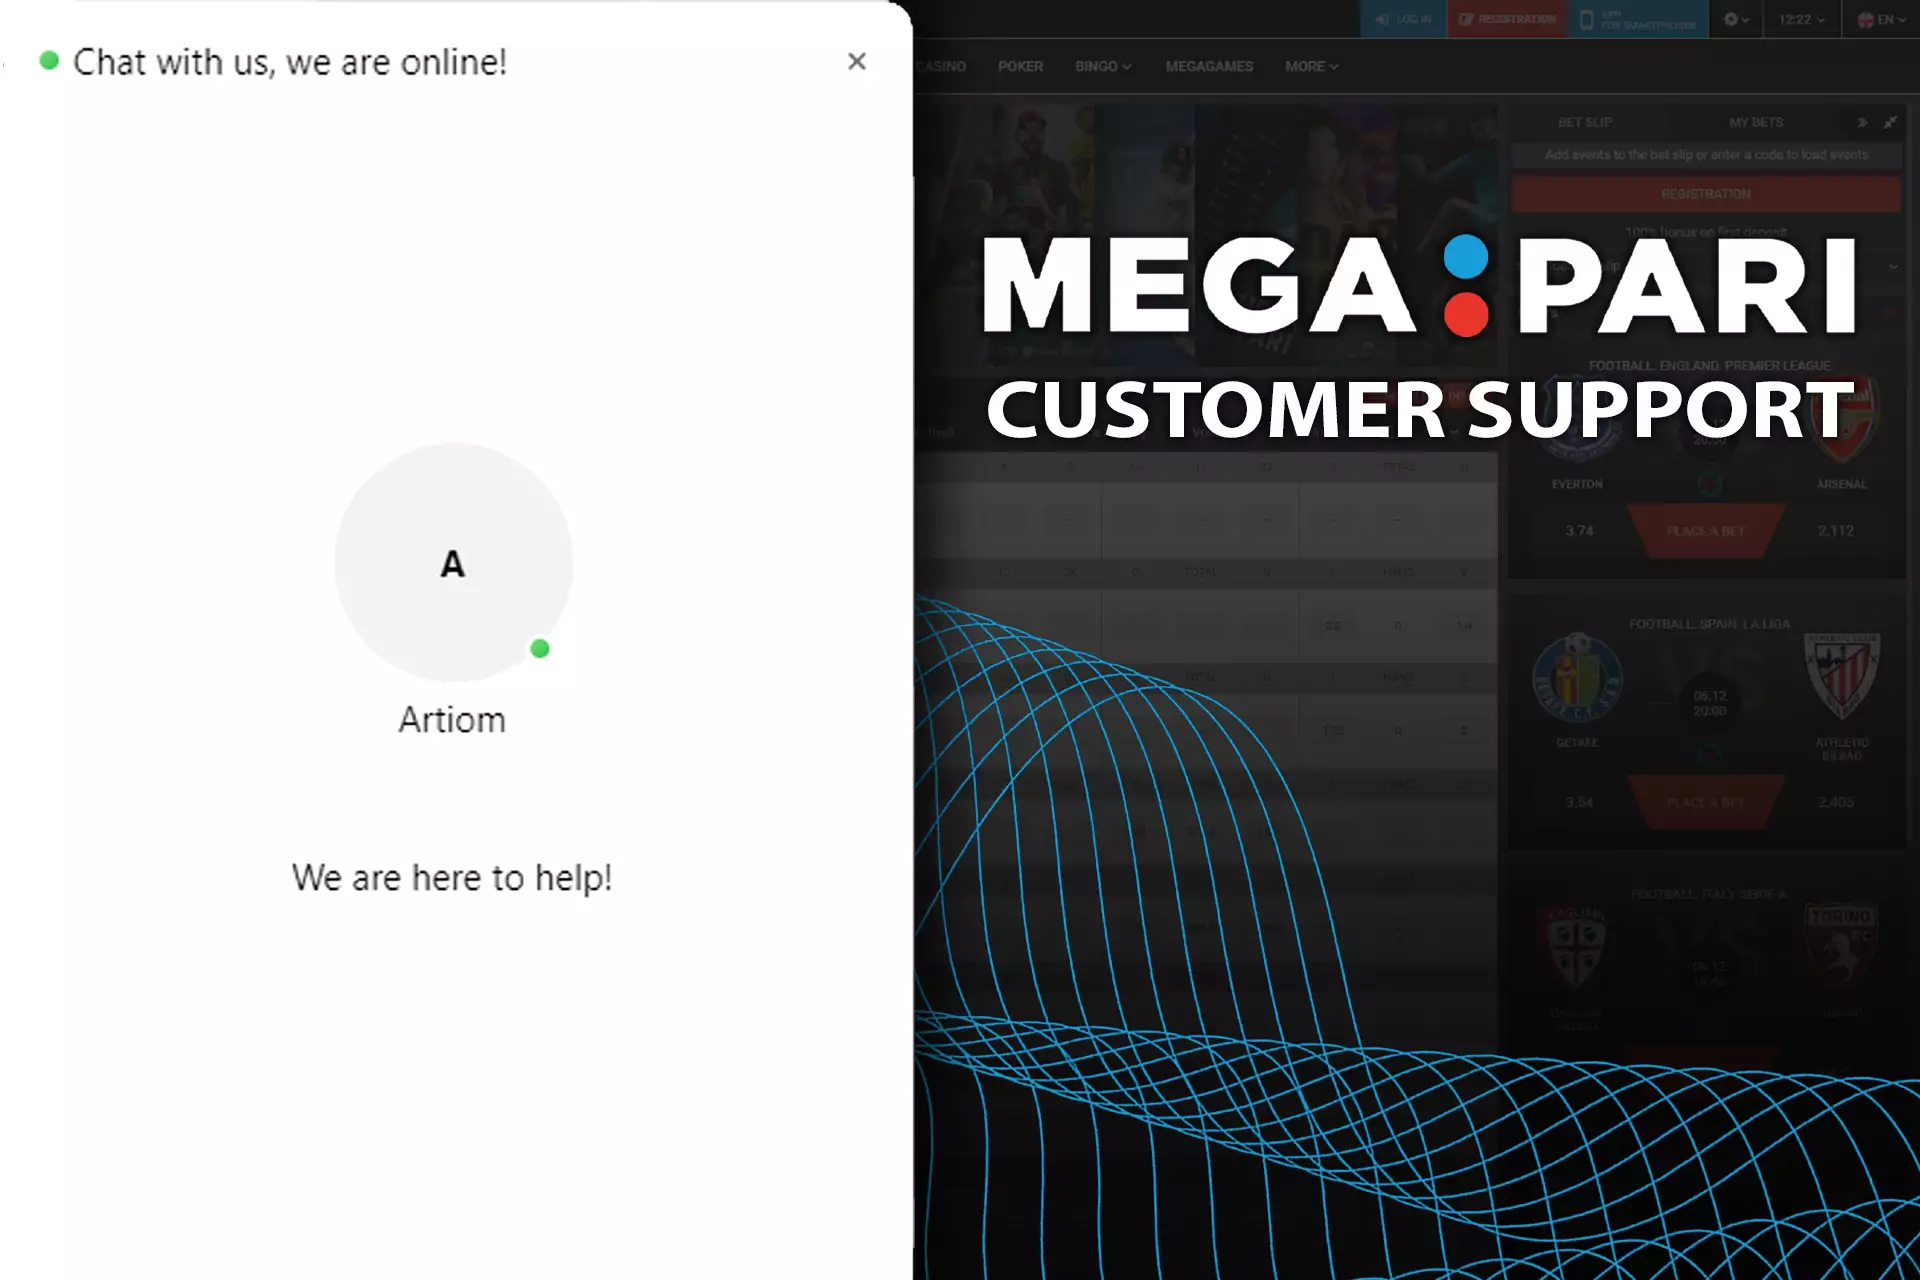 Megapari ग्राहक सहायता 24/7 काम करती है और आपकी मदद के लिए हमेशा तैयार रहती है।